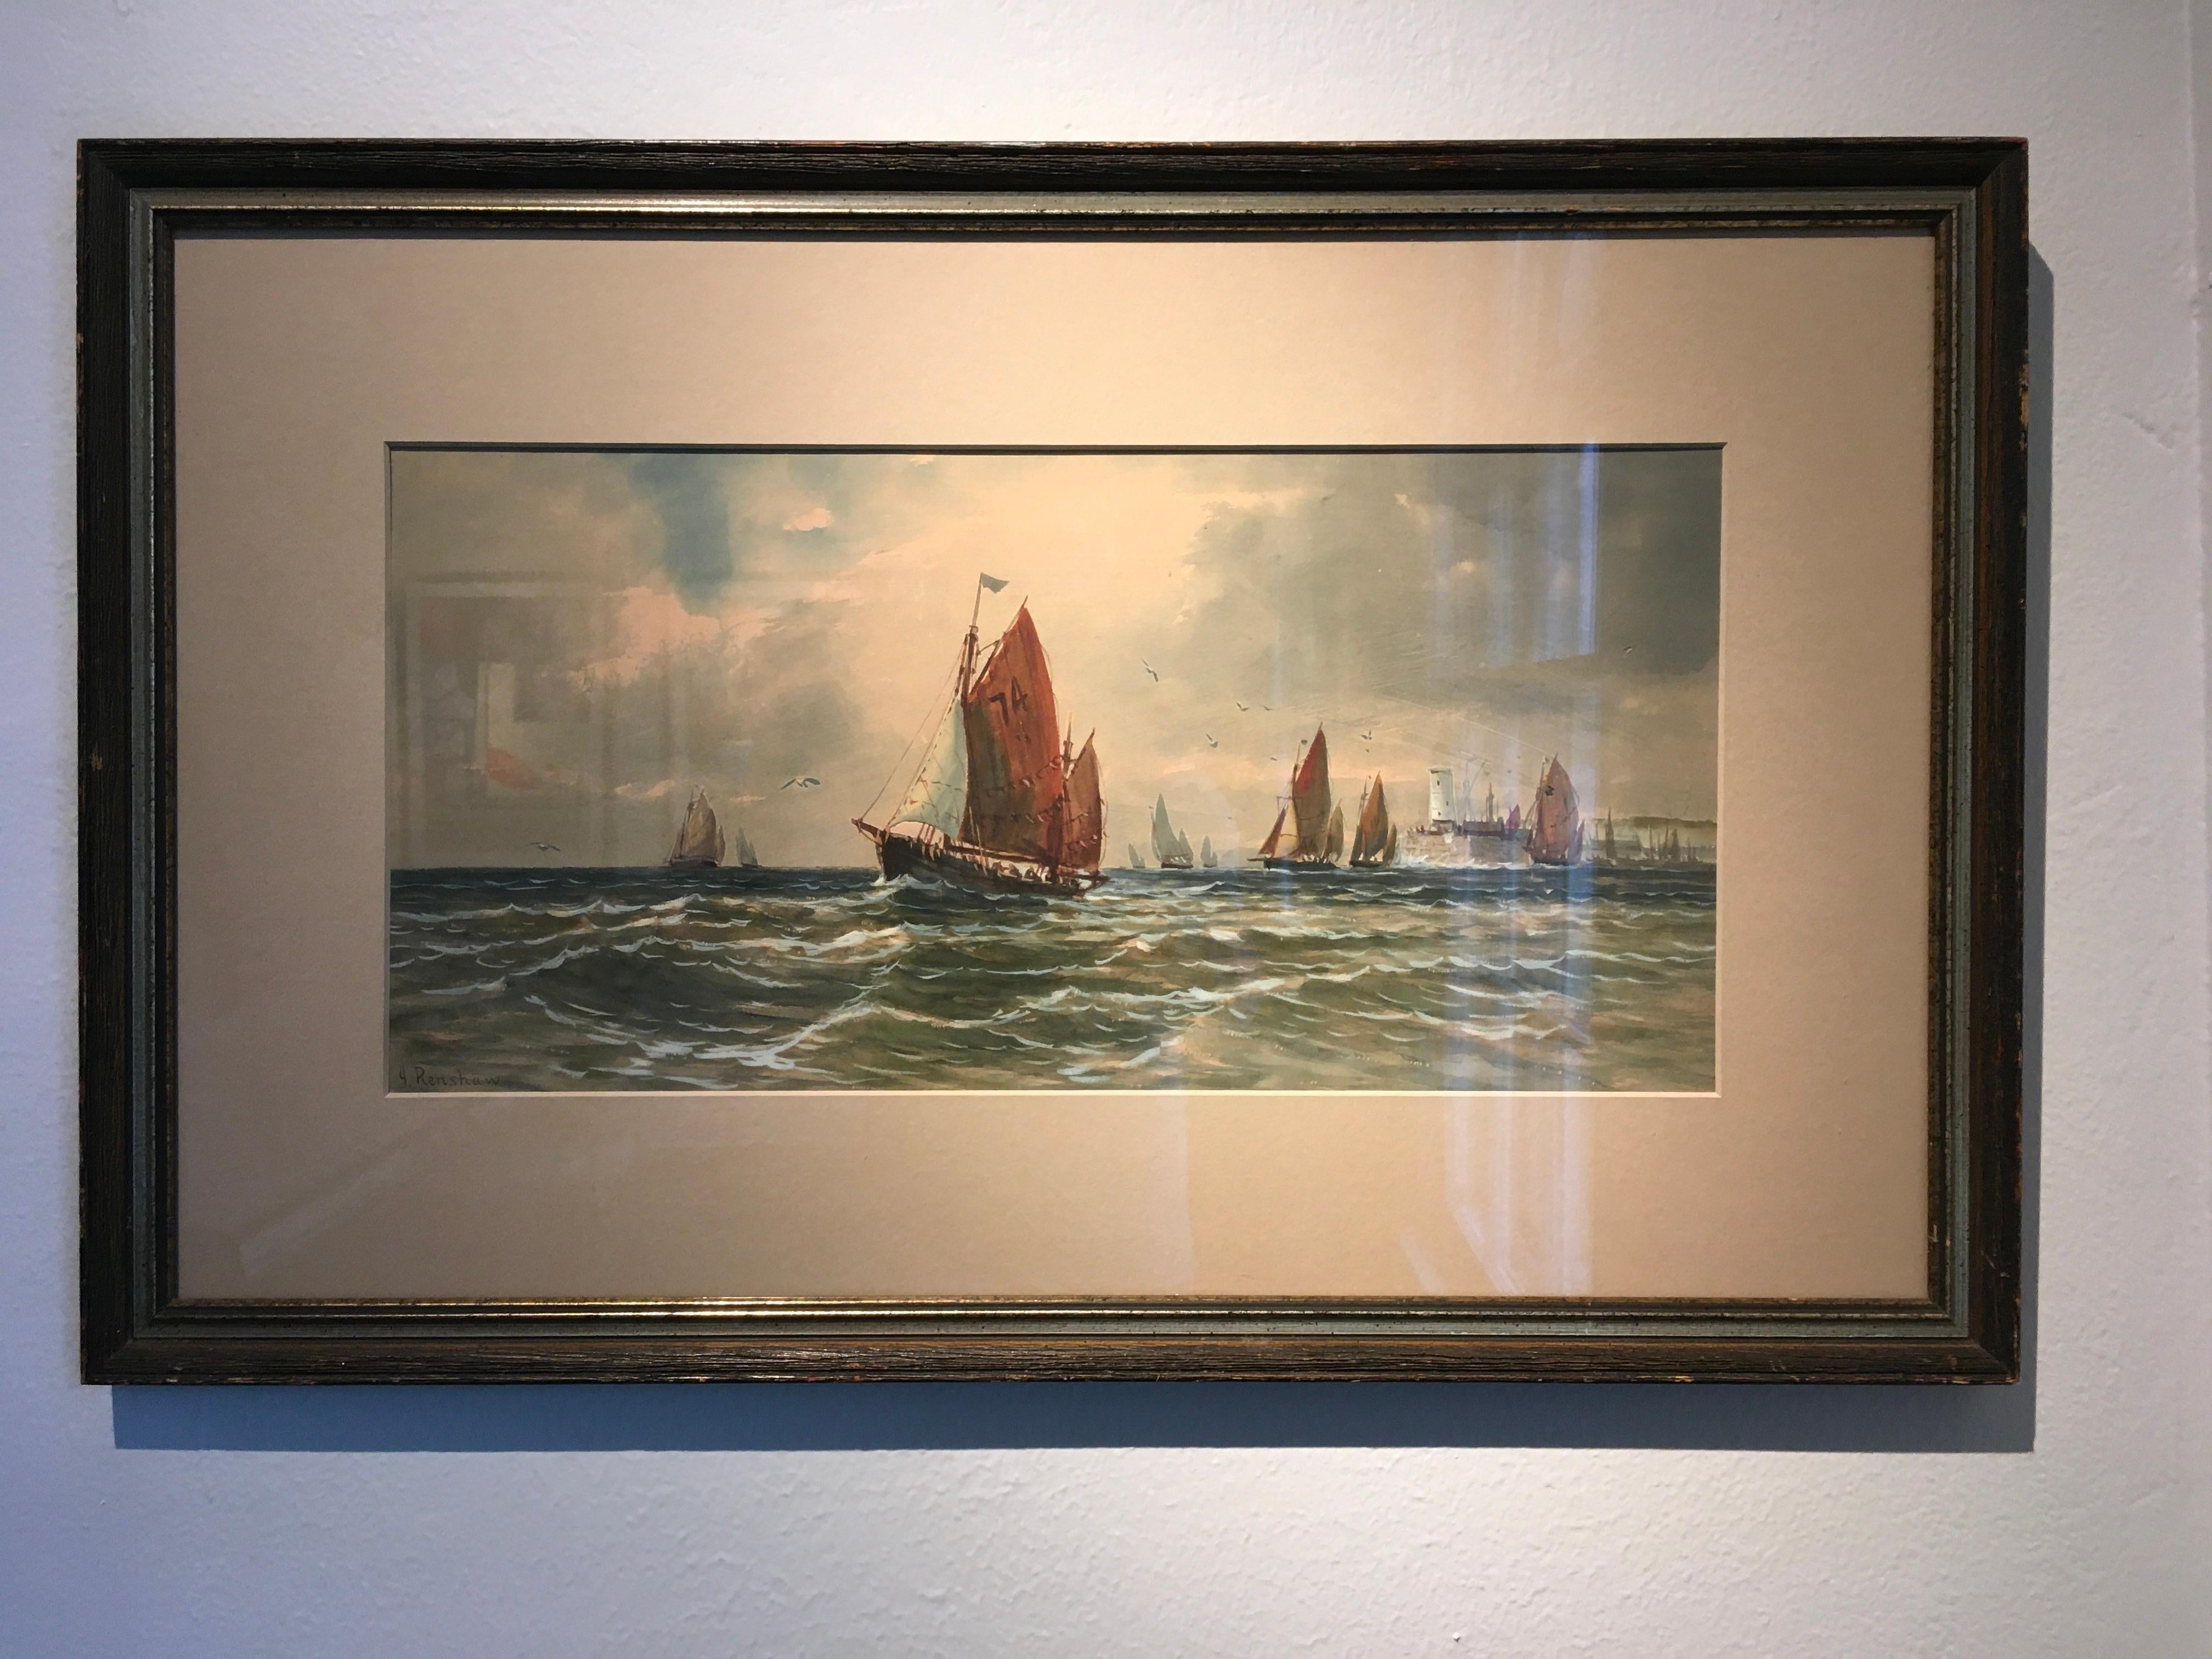 Cette aquarelle de 9,25" x 19,375" est signée et attribuée à J. Renshaw (peut-être Joshua Renshaw). La peinture représente un paysage marin de voiliers sur un plan d'eau venteux. Il y a environ six voiliers qui sont clairement représentés, et